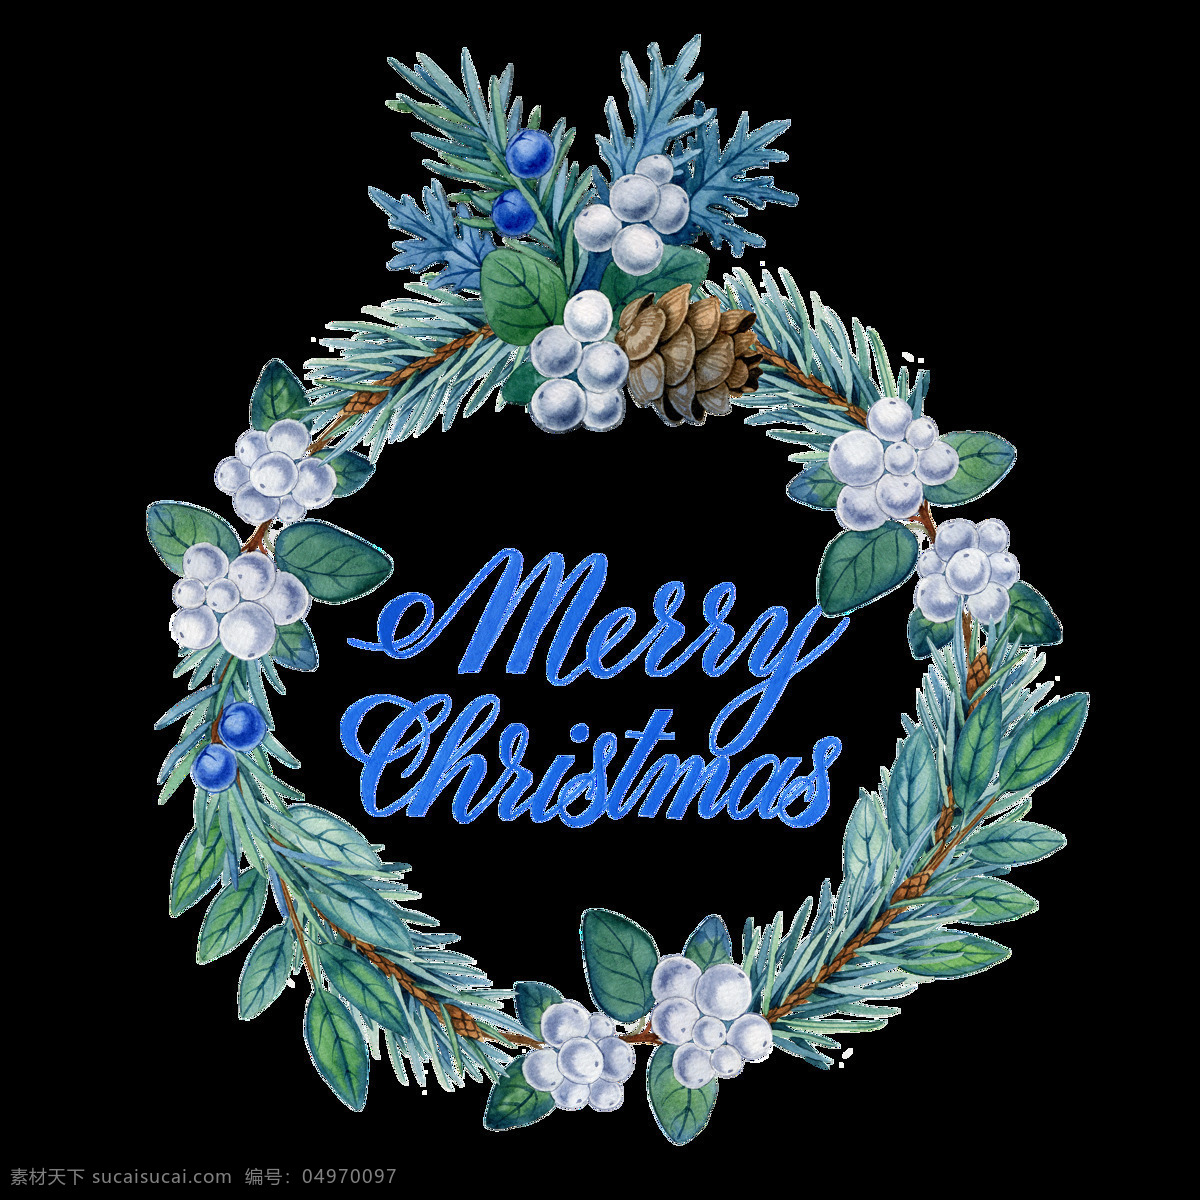 手绘 圣诞节 装饰 挂件 透明 蓝色 绿色 免扣素材 平安夜 圣诞树 松子 透明素材 叶子 装饰图案